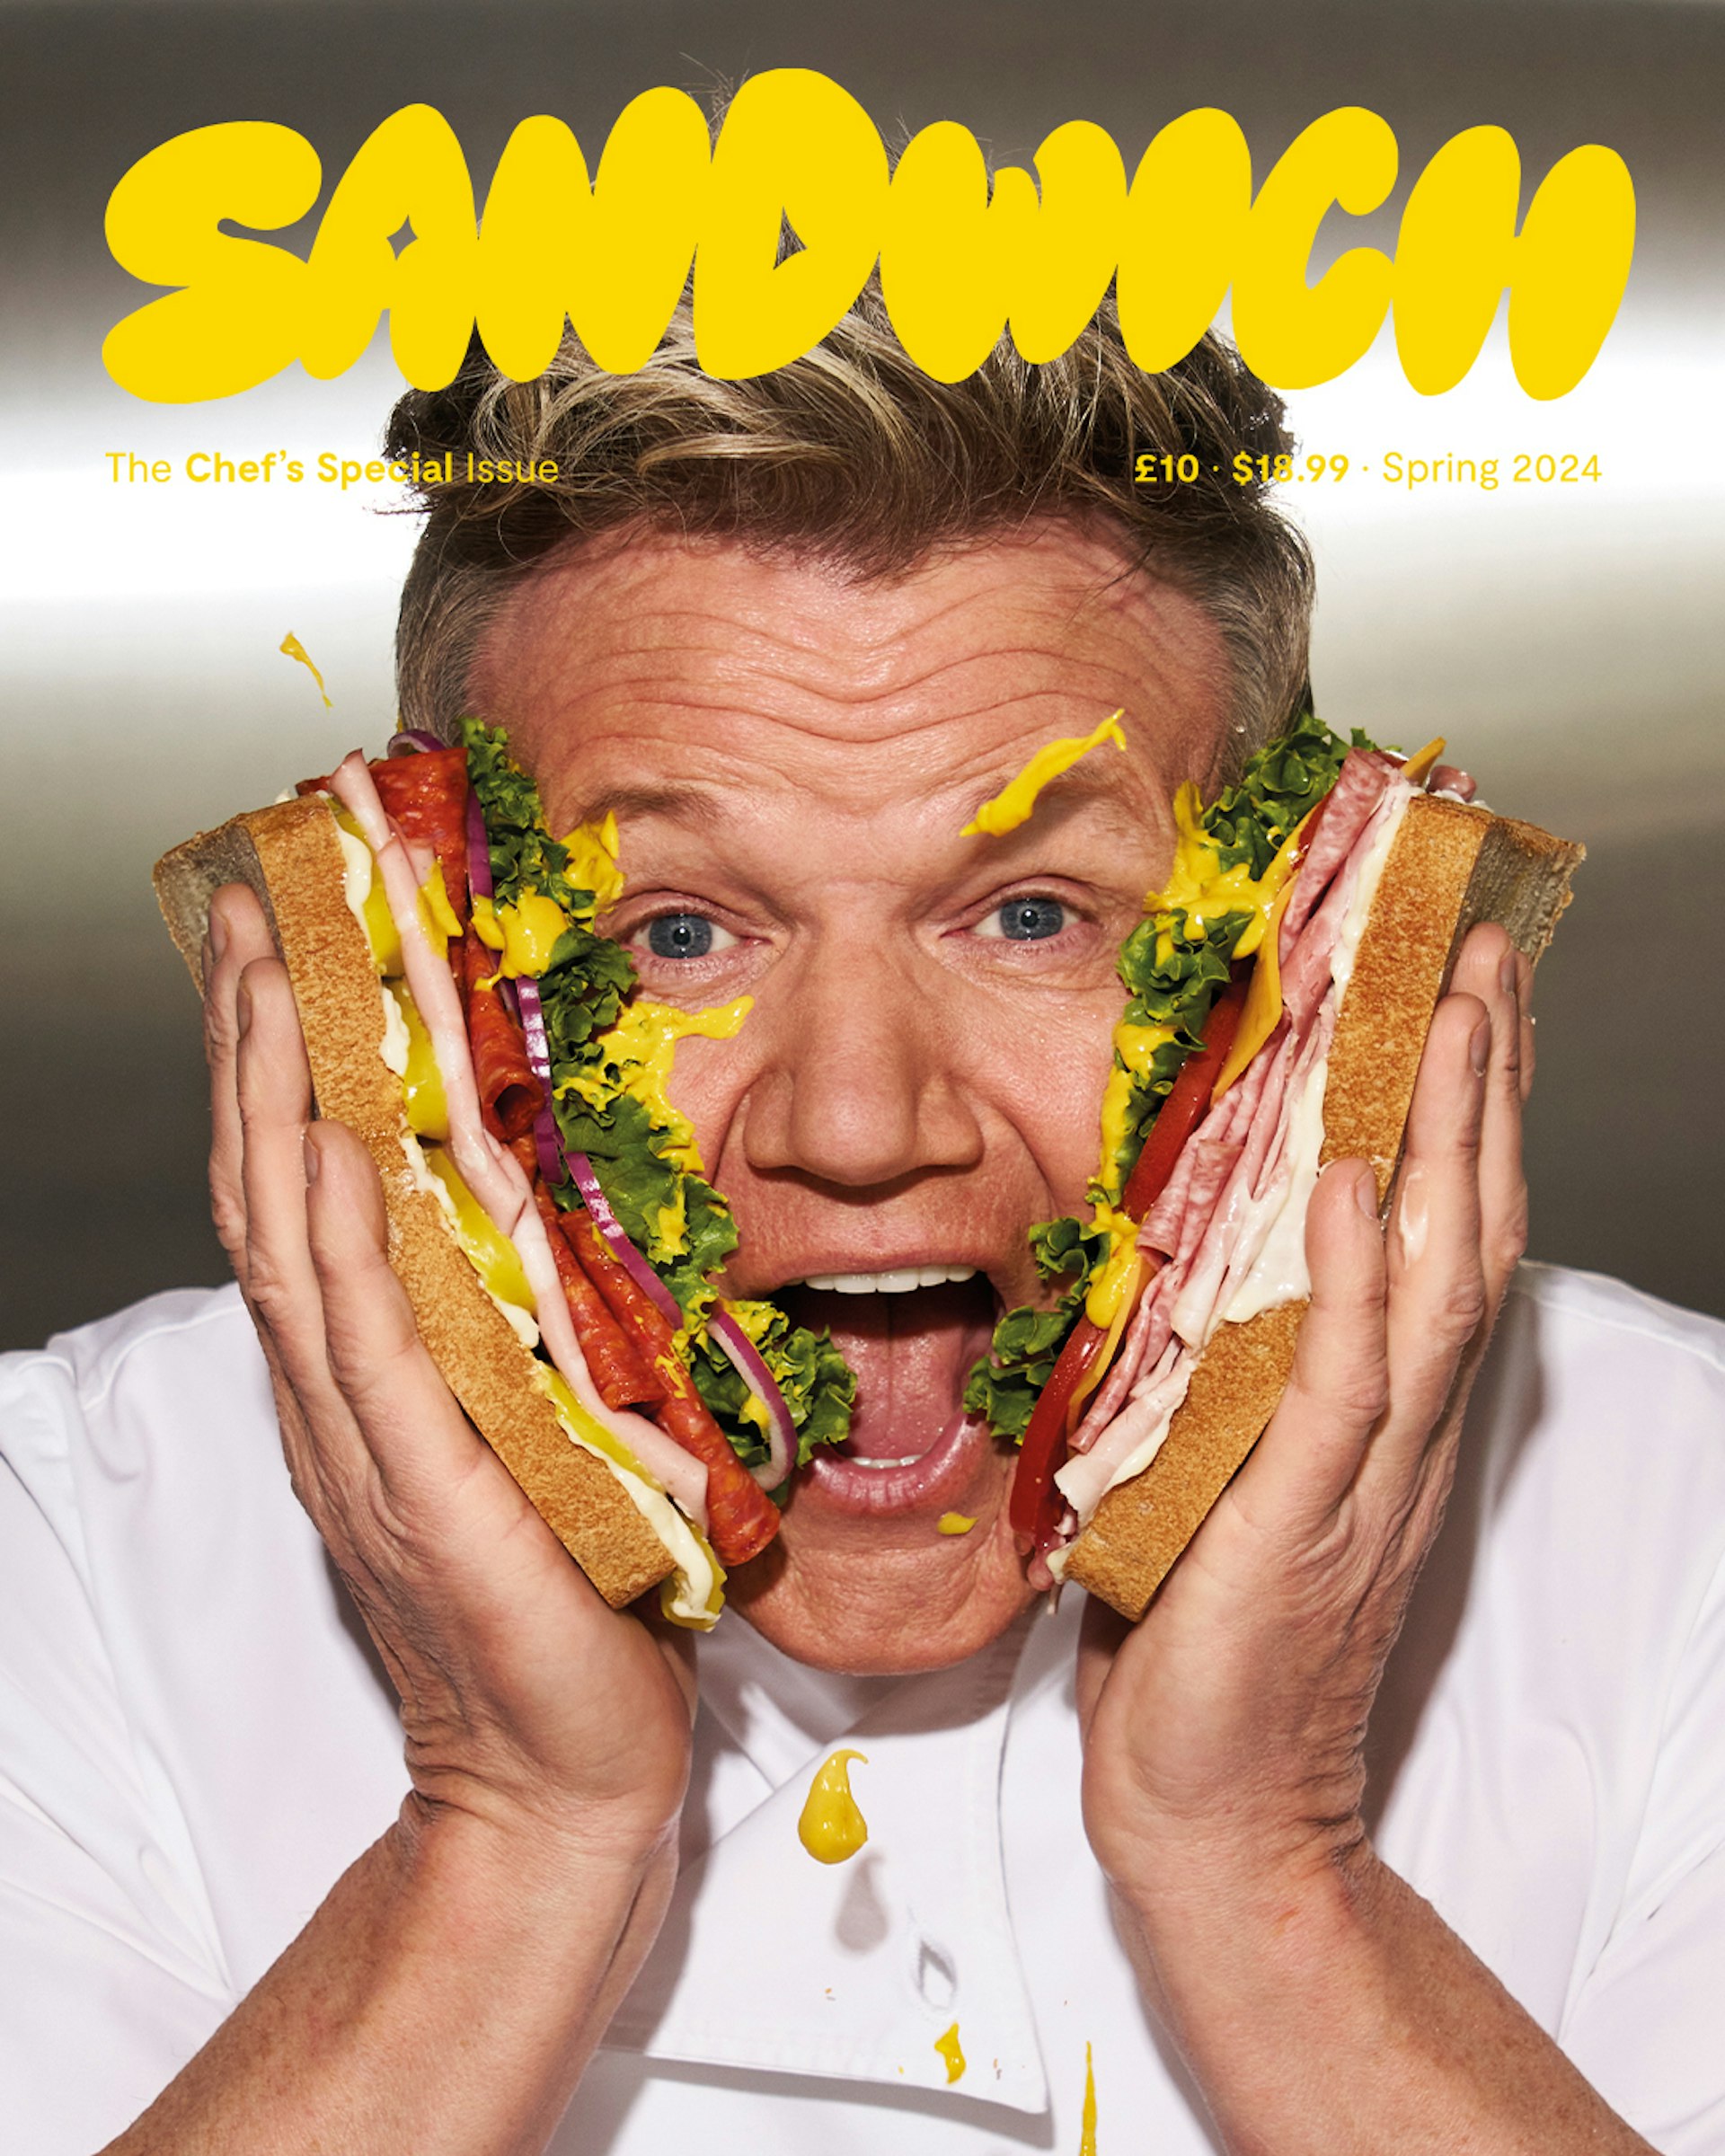 Gordon Ramsay introduces Sandwich issue #8